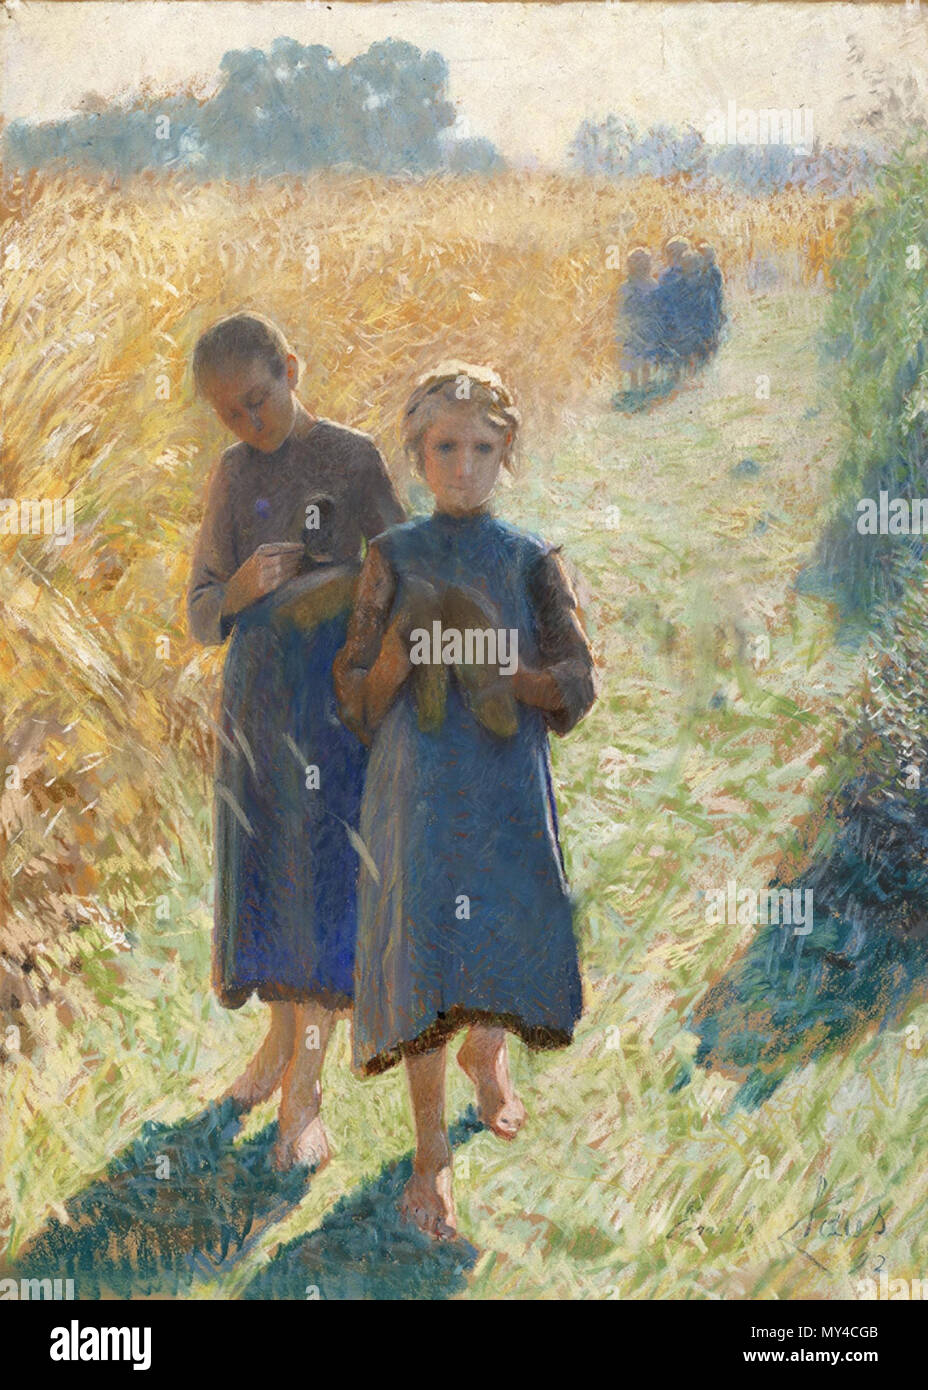 . Anglais : peinture impressionniste belge par Emile Claus. 27 août 2009, 10:15:52. Emile Claus (1849-1924) 160 Emile Clause - Country Life Banque D'Images